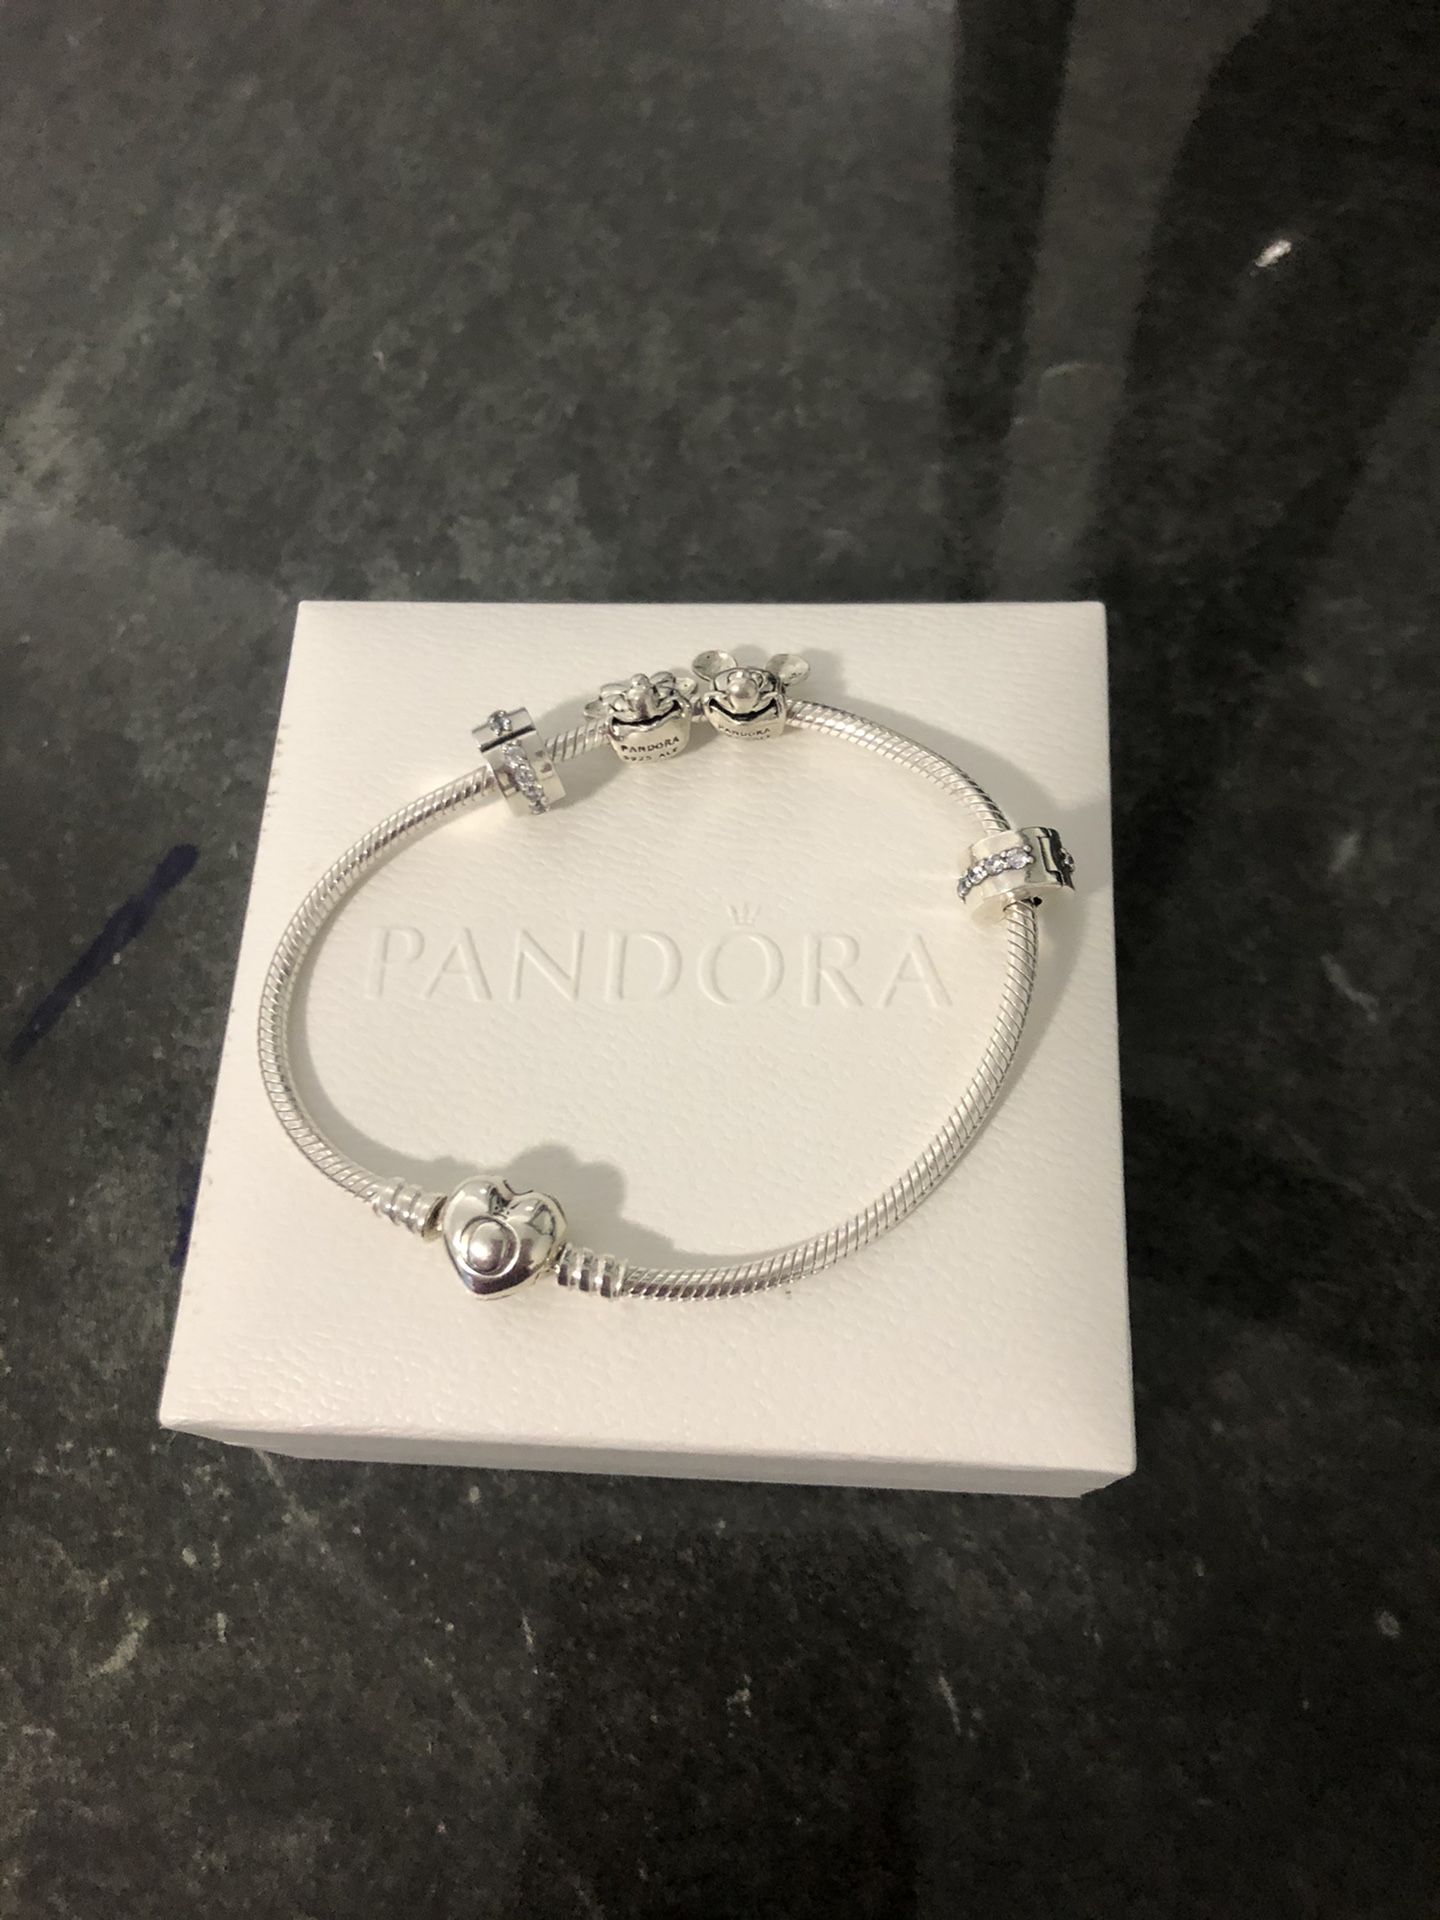 Pandora brazalete authentic 4 charm